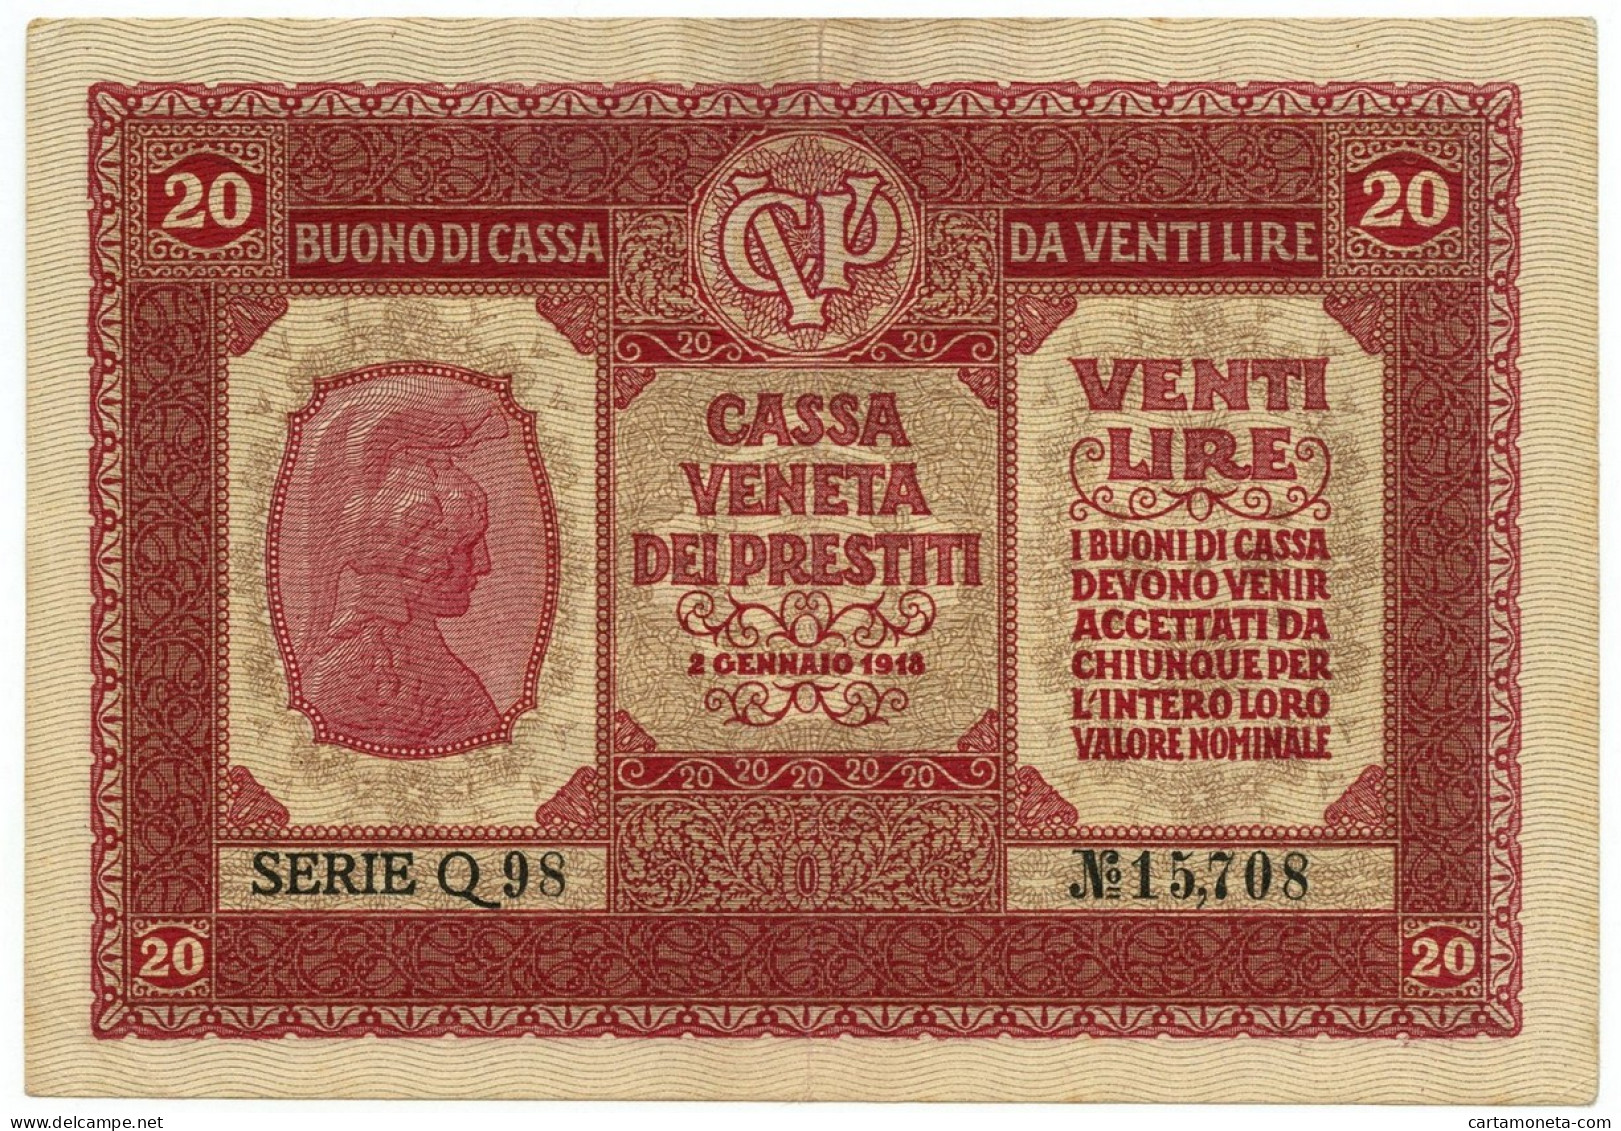 20 LIRE CASSA VENETA DEI PRESTITI OCCUPAZIONE AUSTRIACA 02/01/1918 BB/SPL - Occupation Autrichienne De Venezia